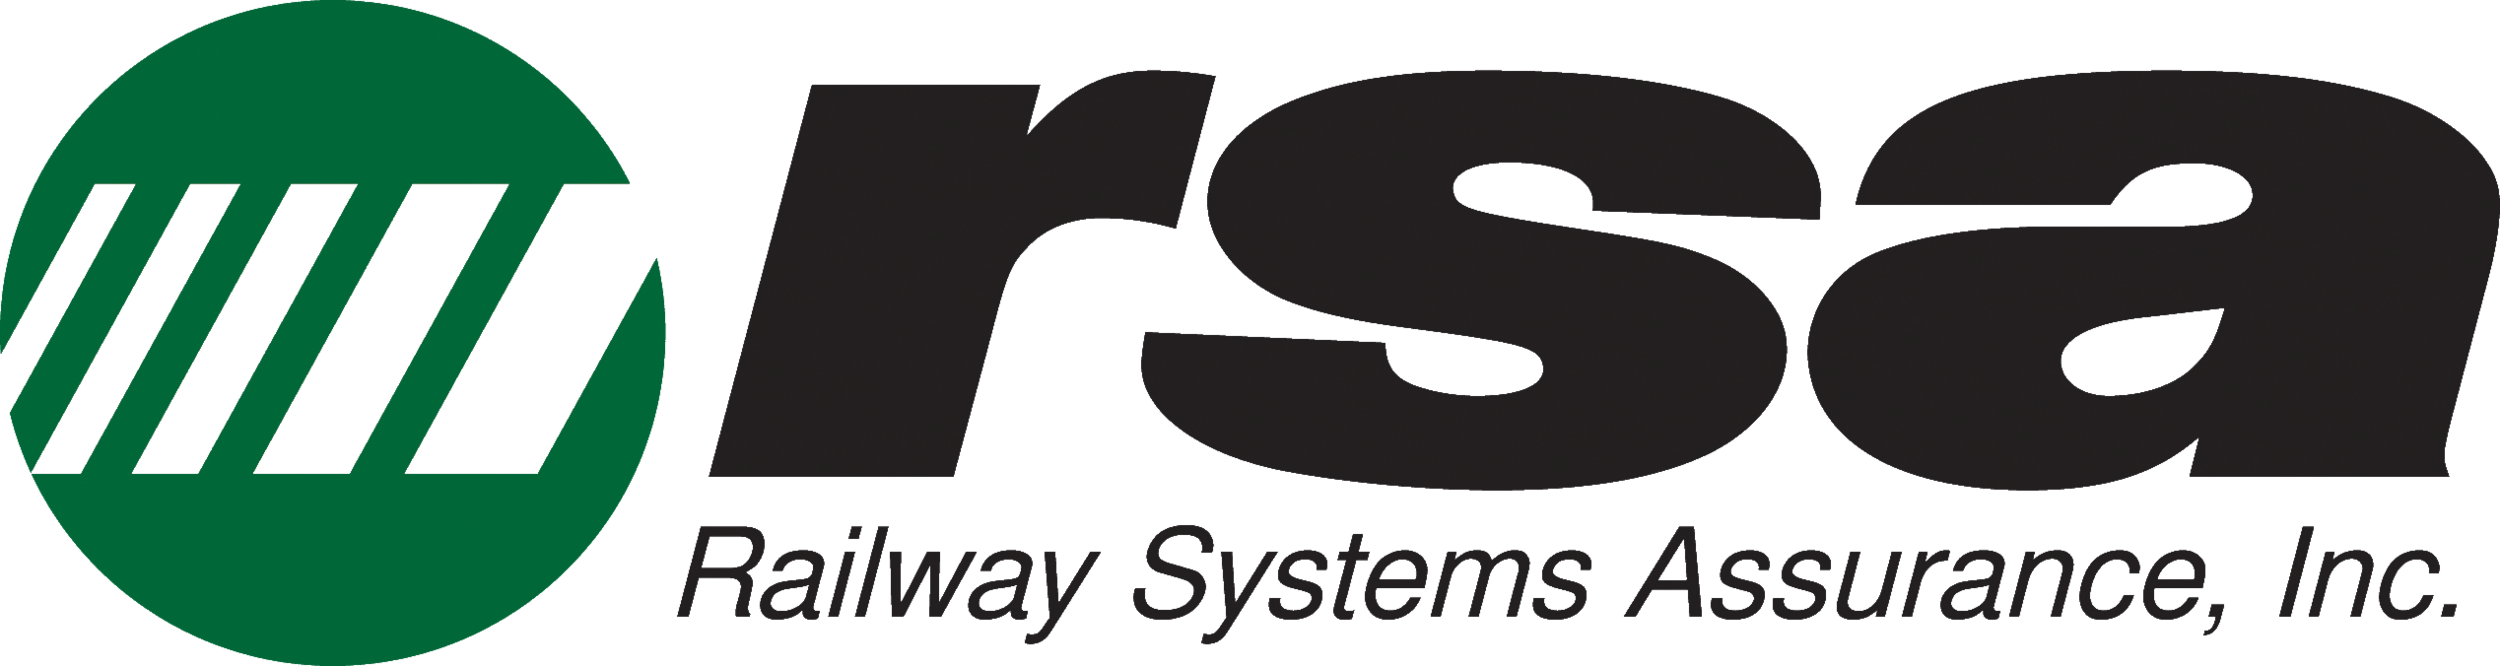 Railway Systems Assurance, Inc.